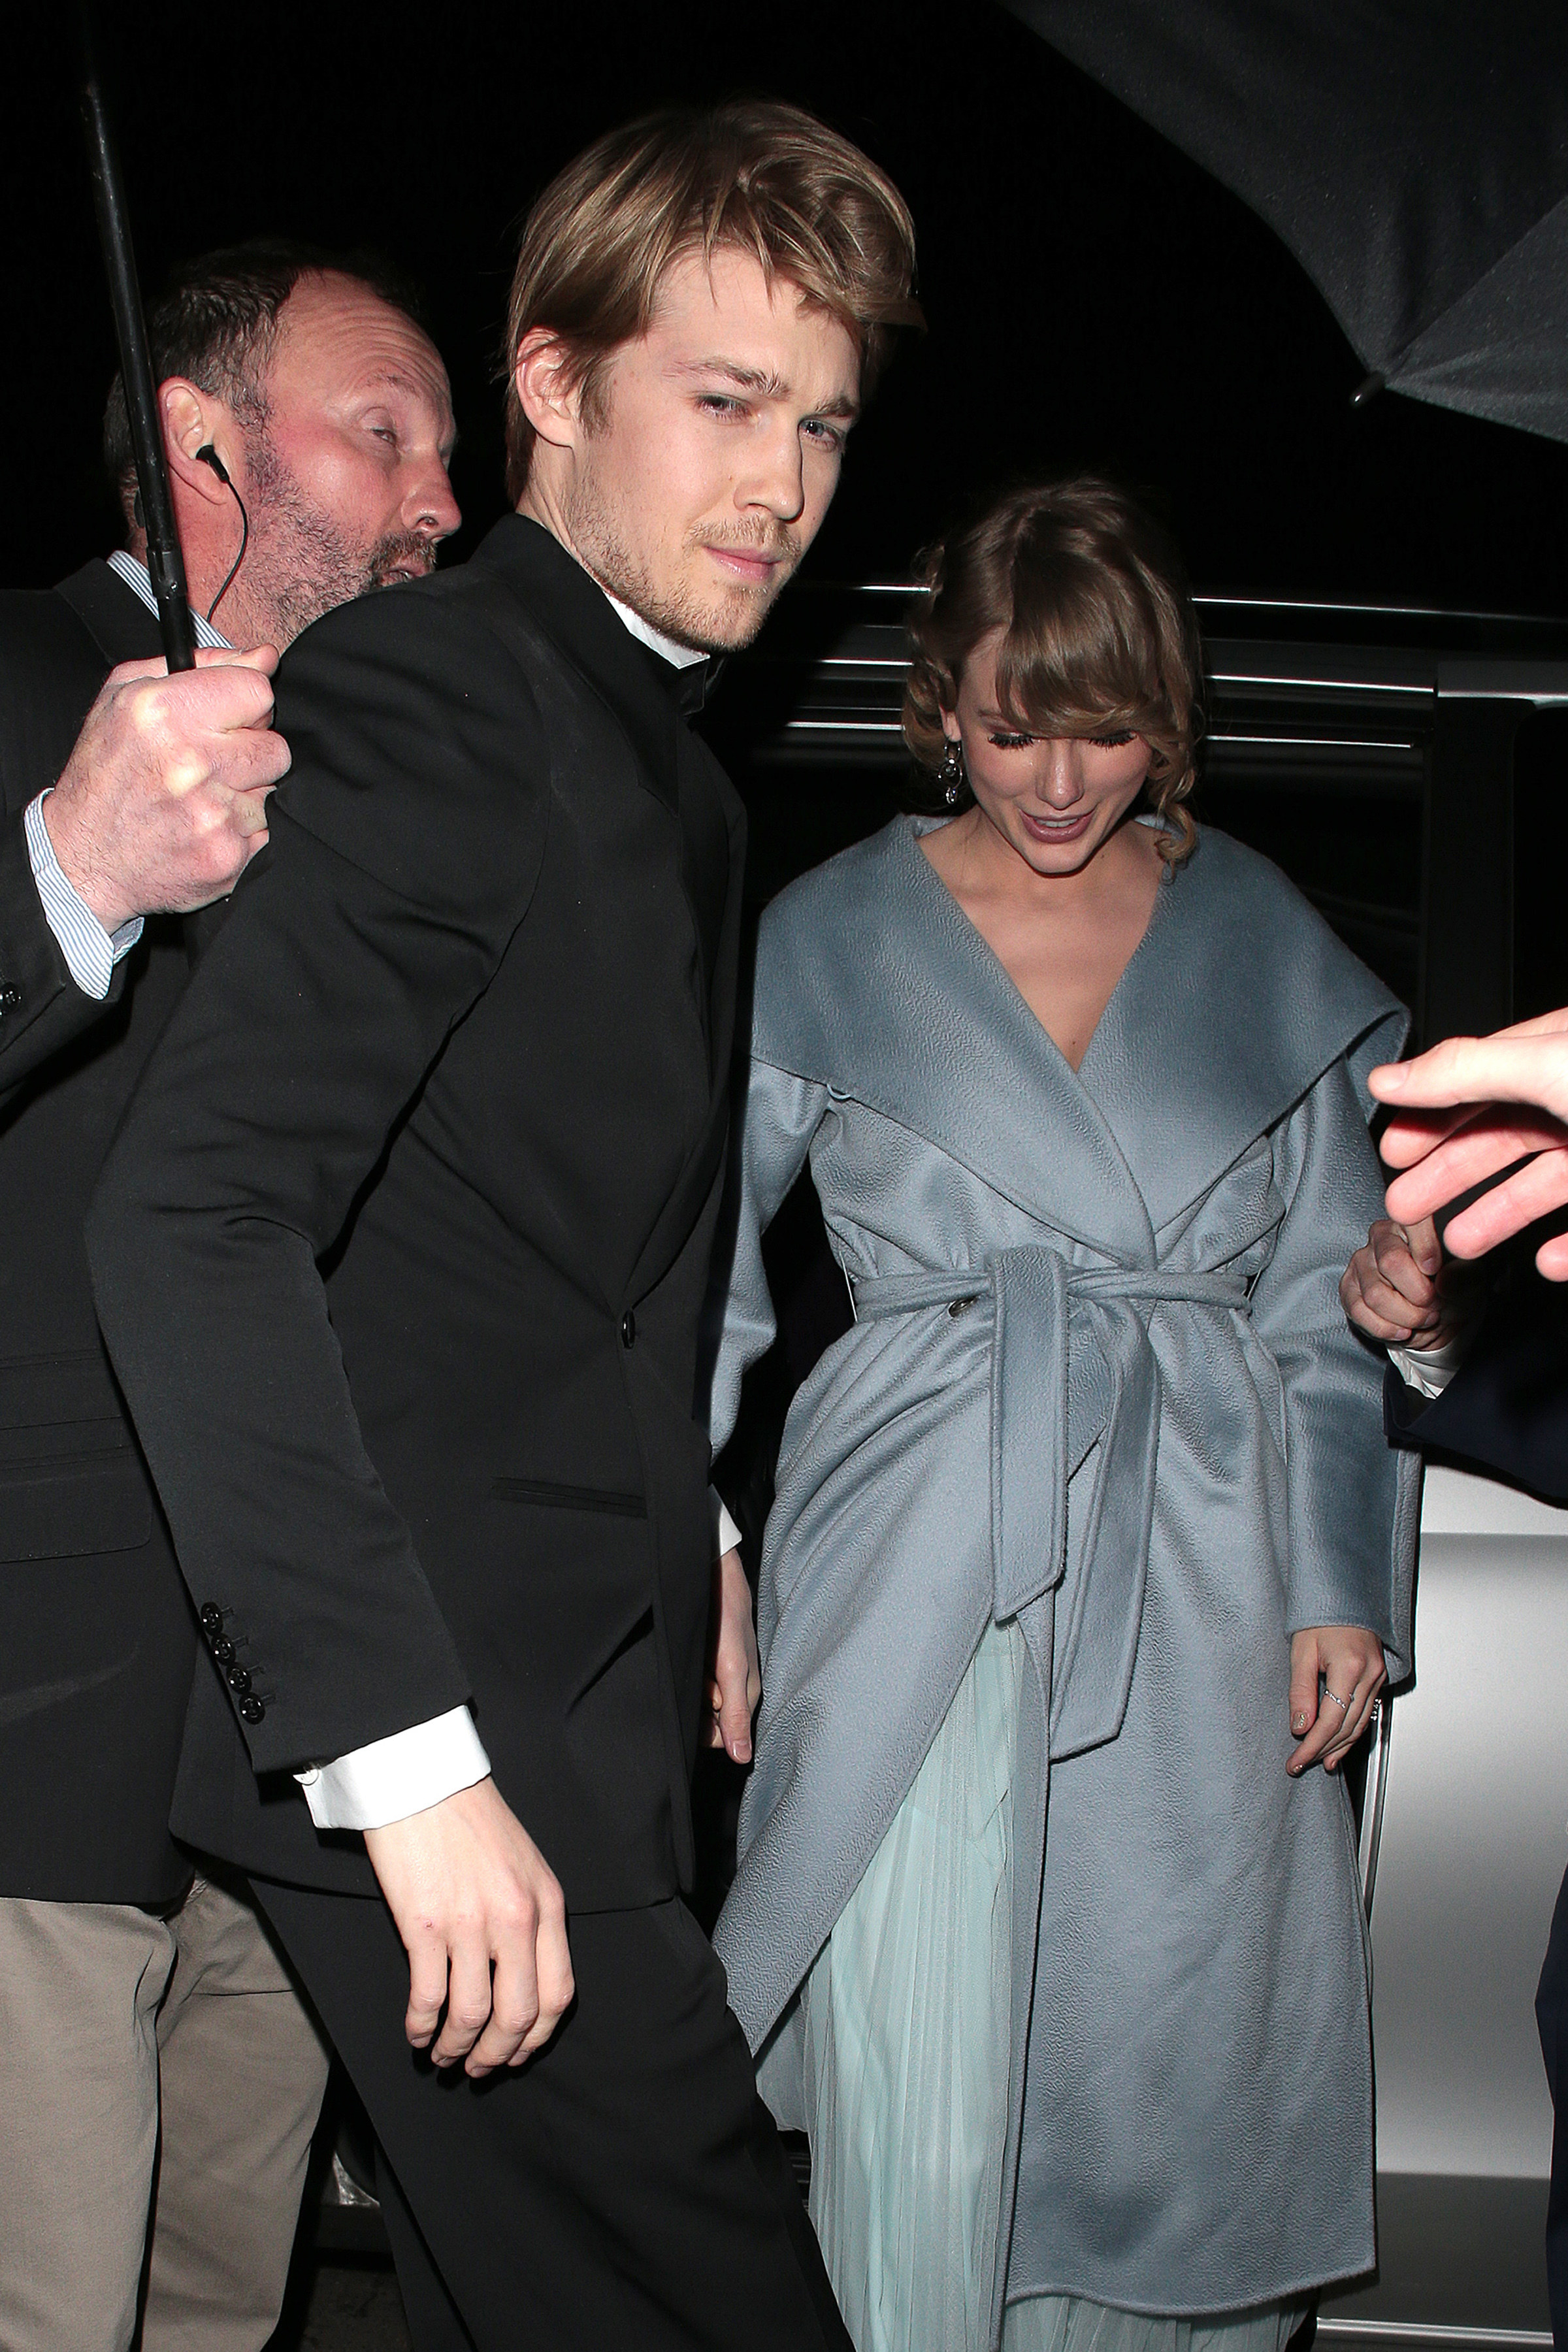 Joe Alwyn and Taylor Swift exiting a car